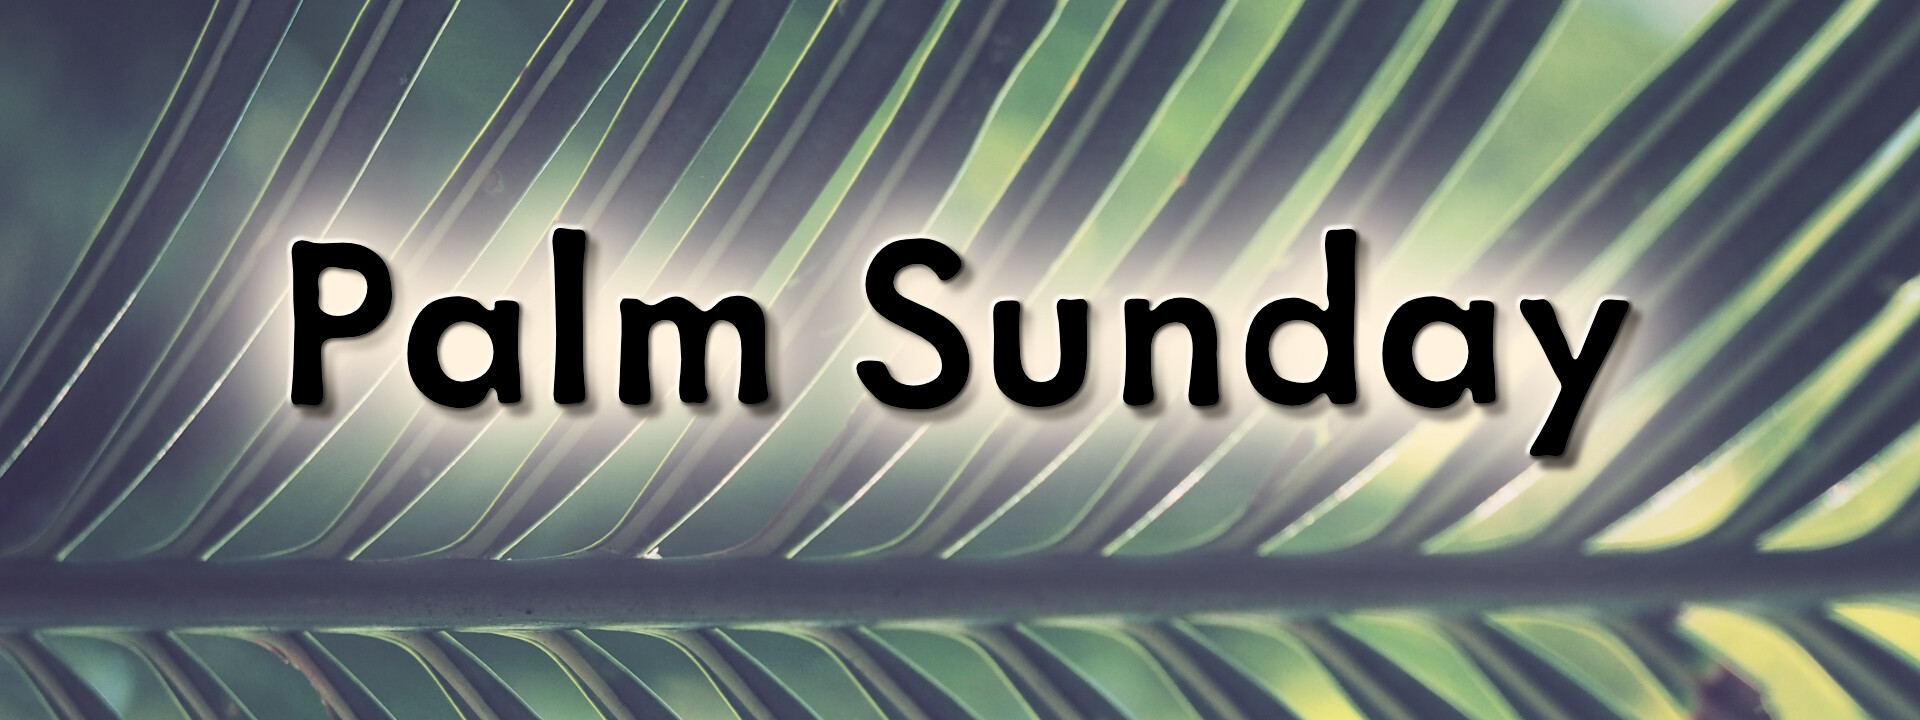 Palm Sunday 2017